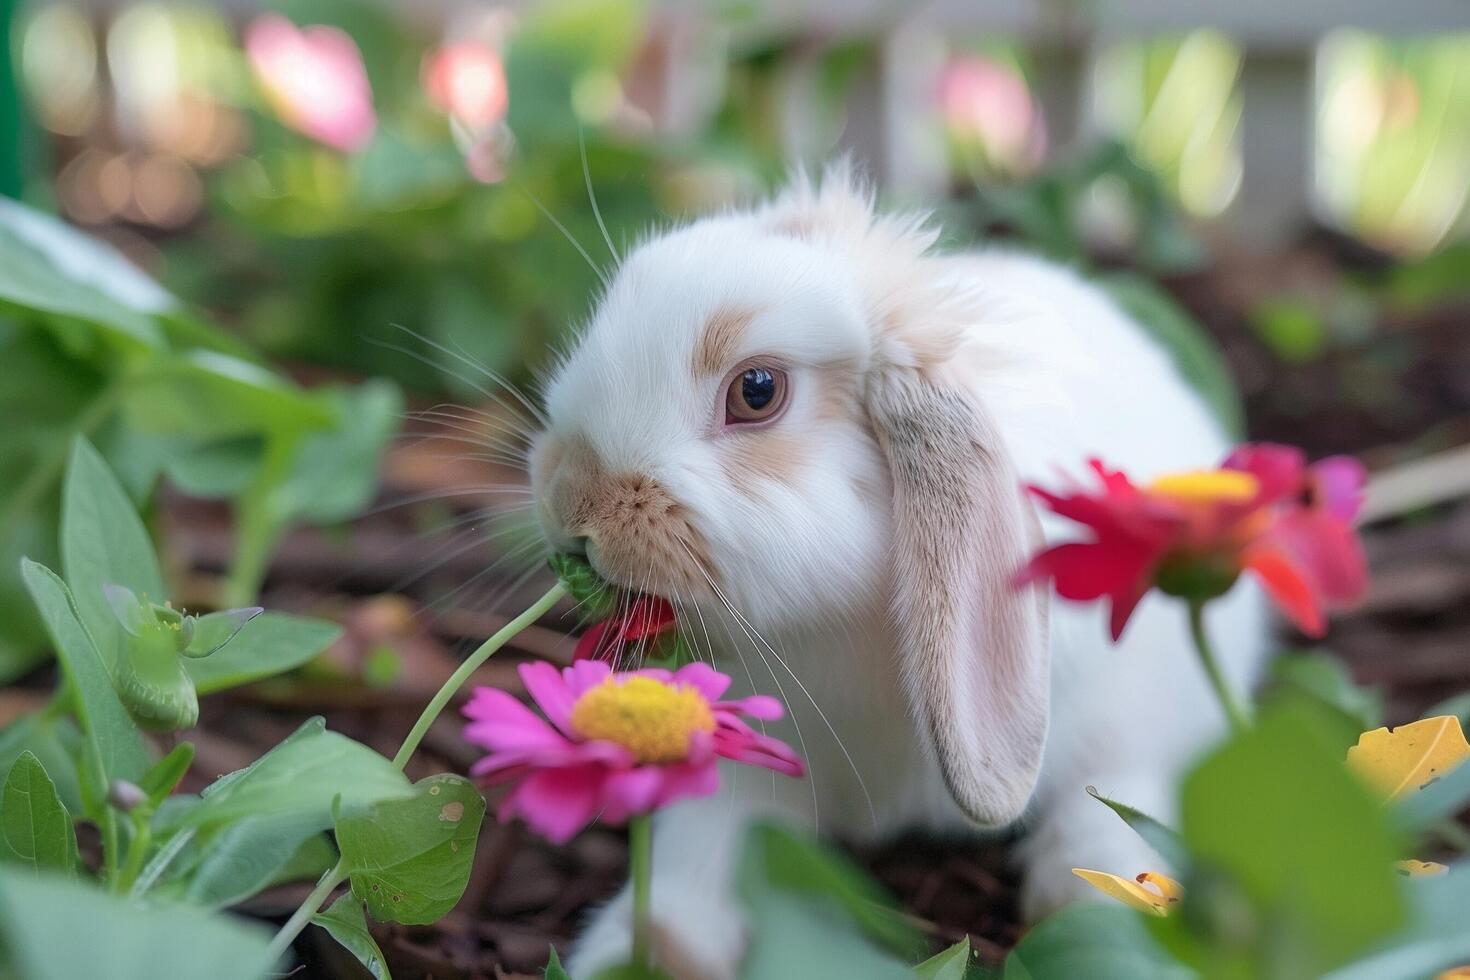 en holland lop kanin med lång polisonger ryckningar, sniffa en blomma foto